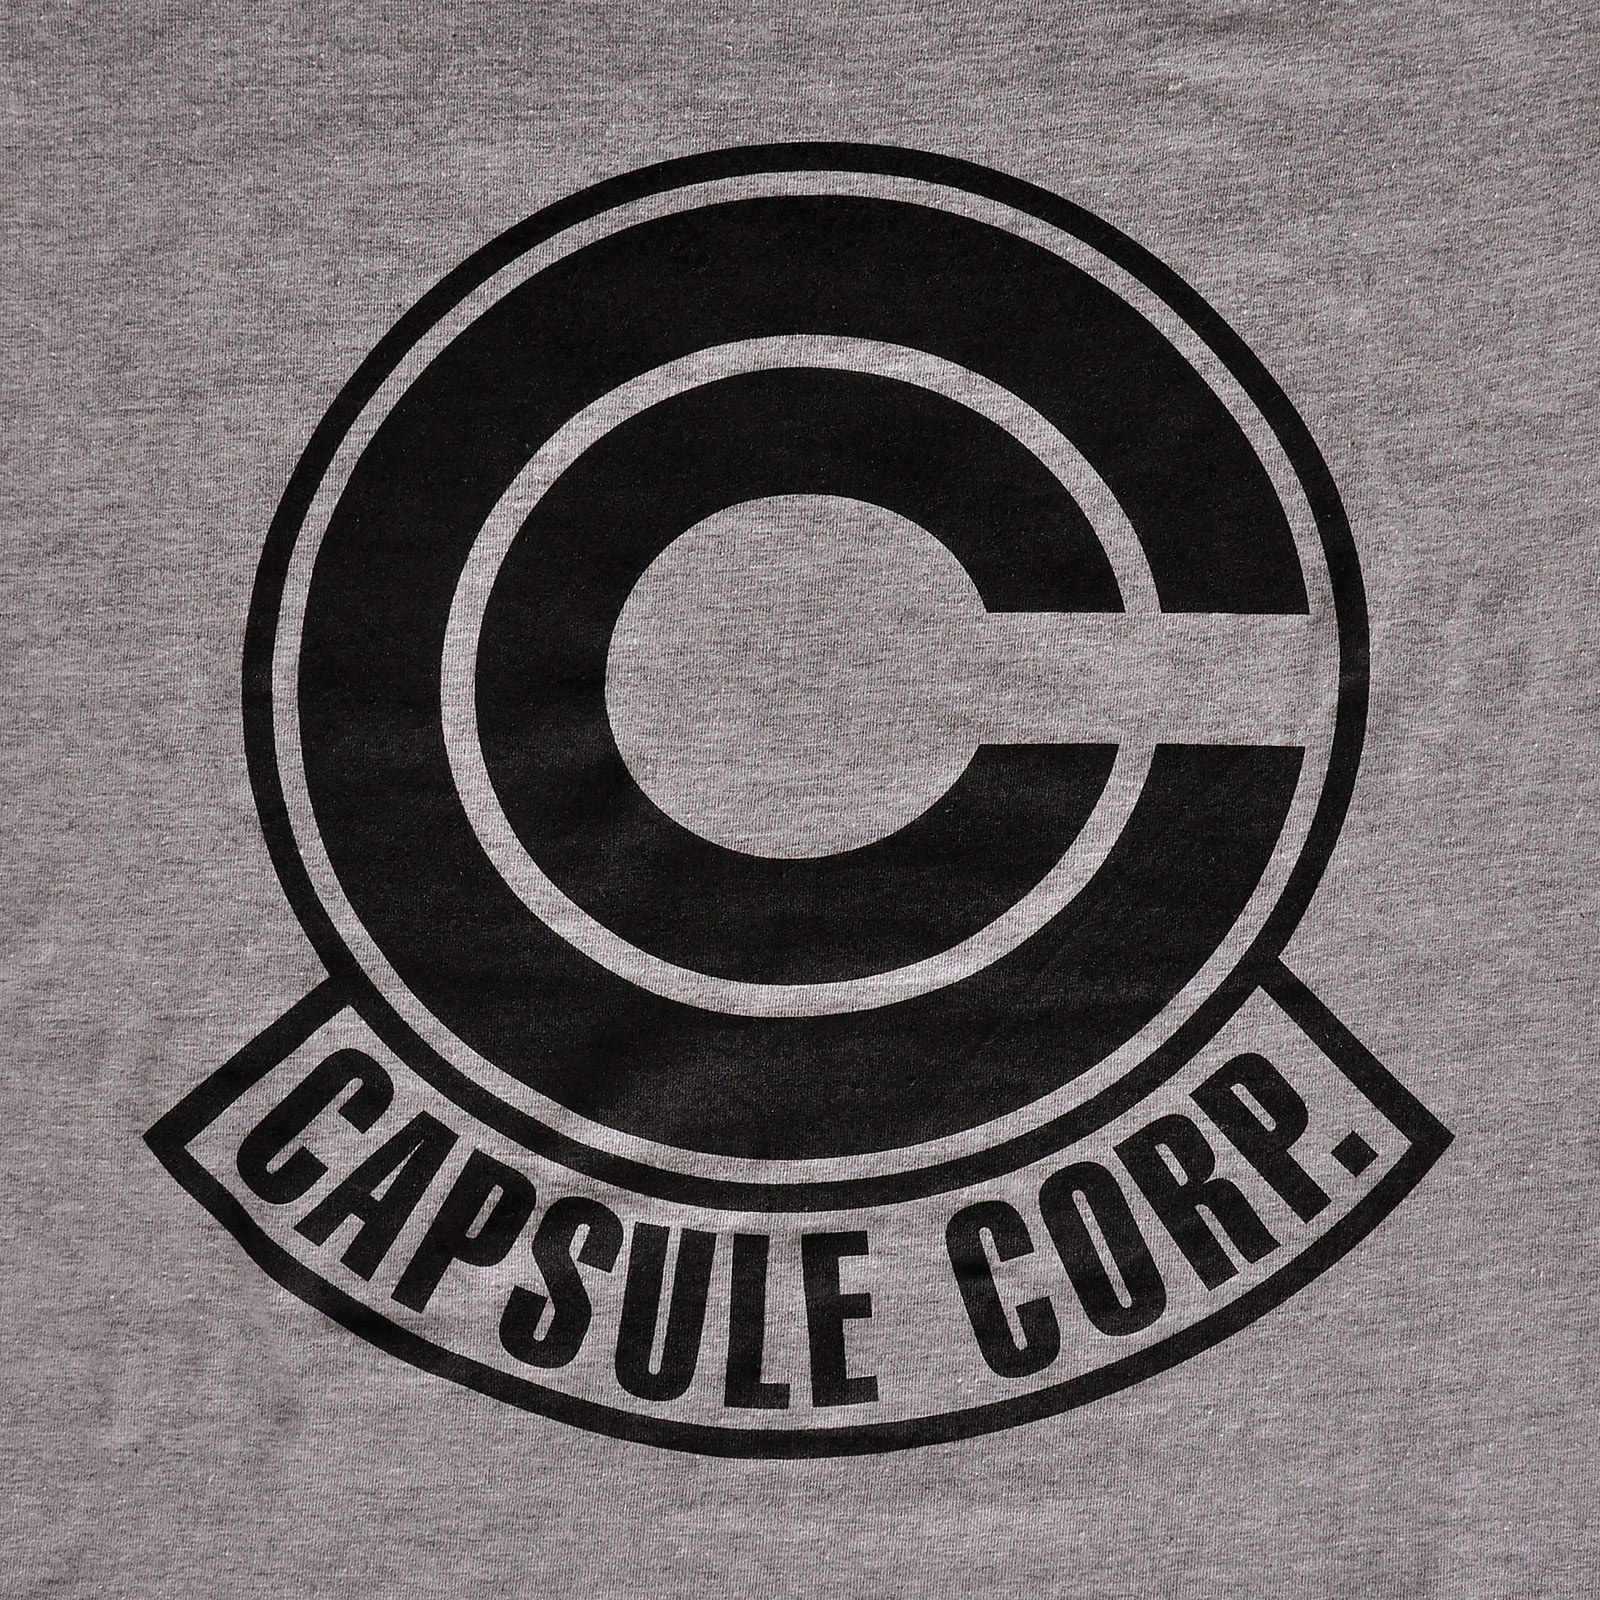 Dragon Ball Z - T-shirt gris avec logo de la Capsule Corporation